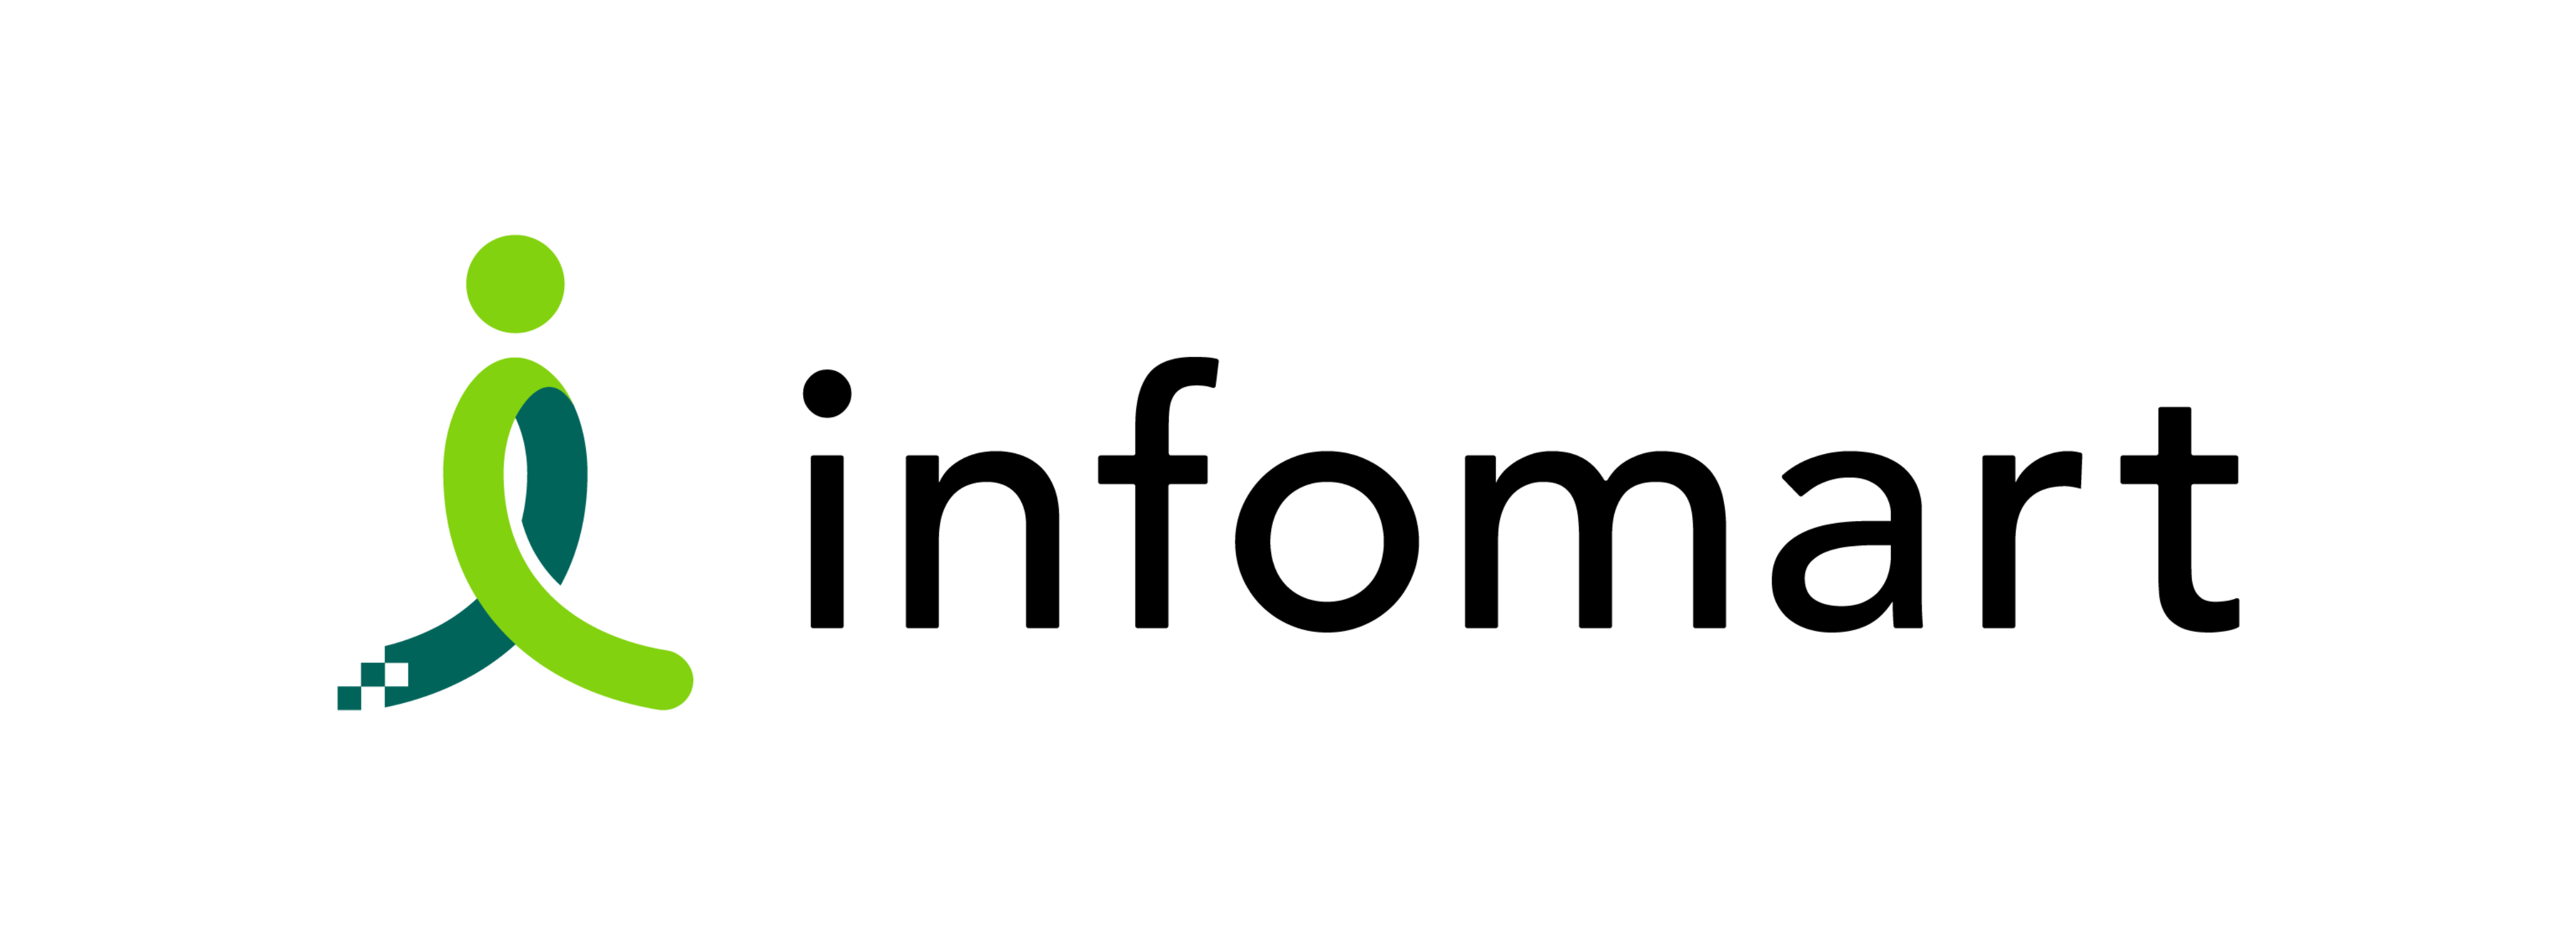 infomart_logo